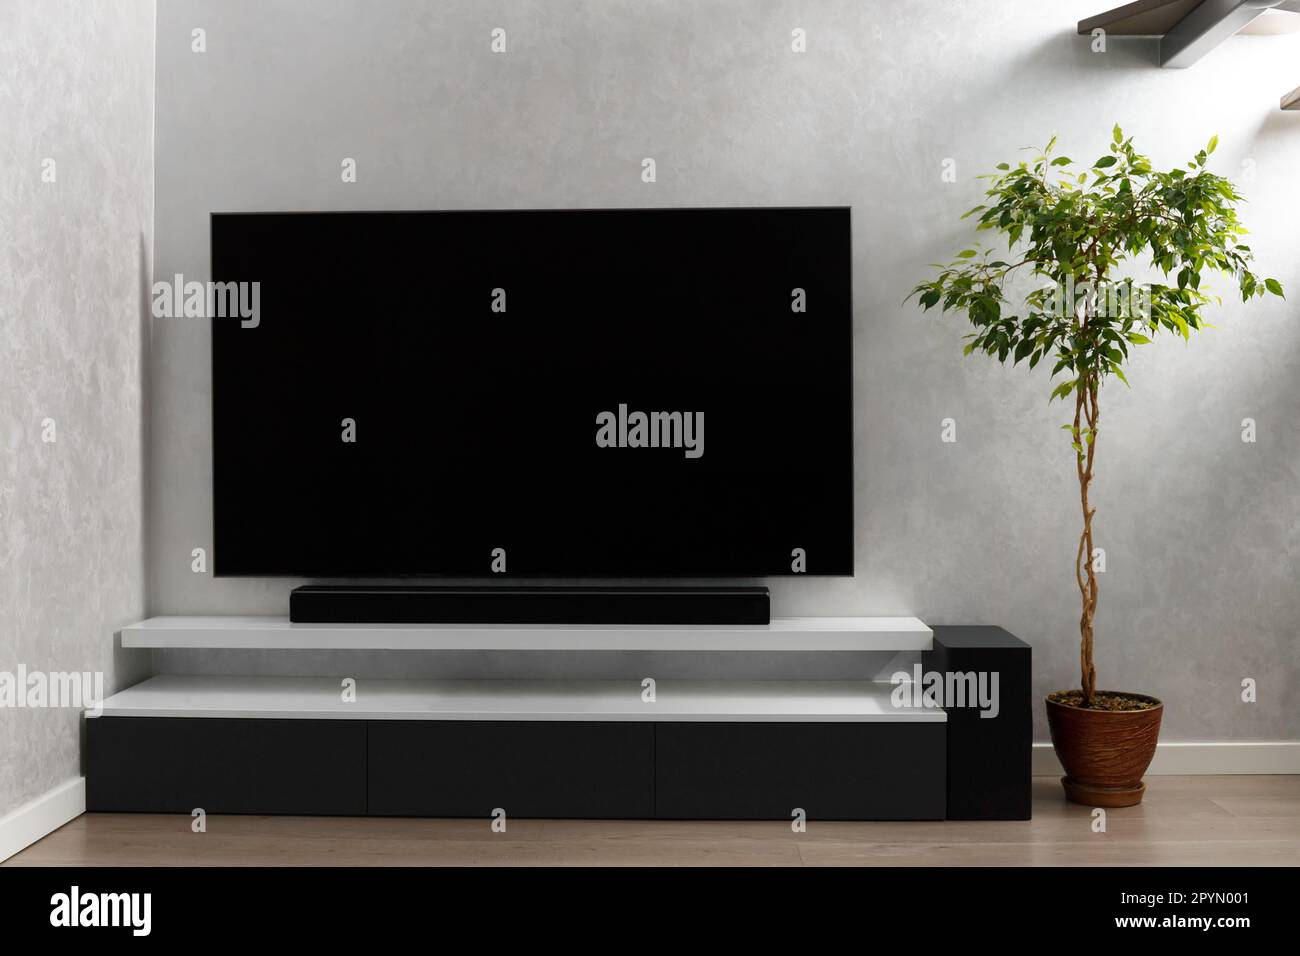 Teil des Wohnzimmers mit Fernseher an der Wand, HiFi-Ausstattung, Soundbar,  grauem Schrank und einer großen Innenblume. TV- und Musiksystem  Stockfotografie - Alamy